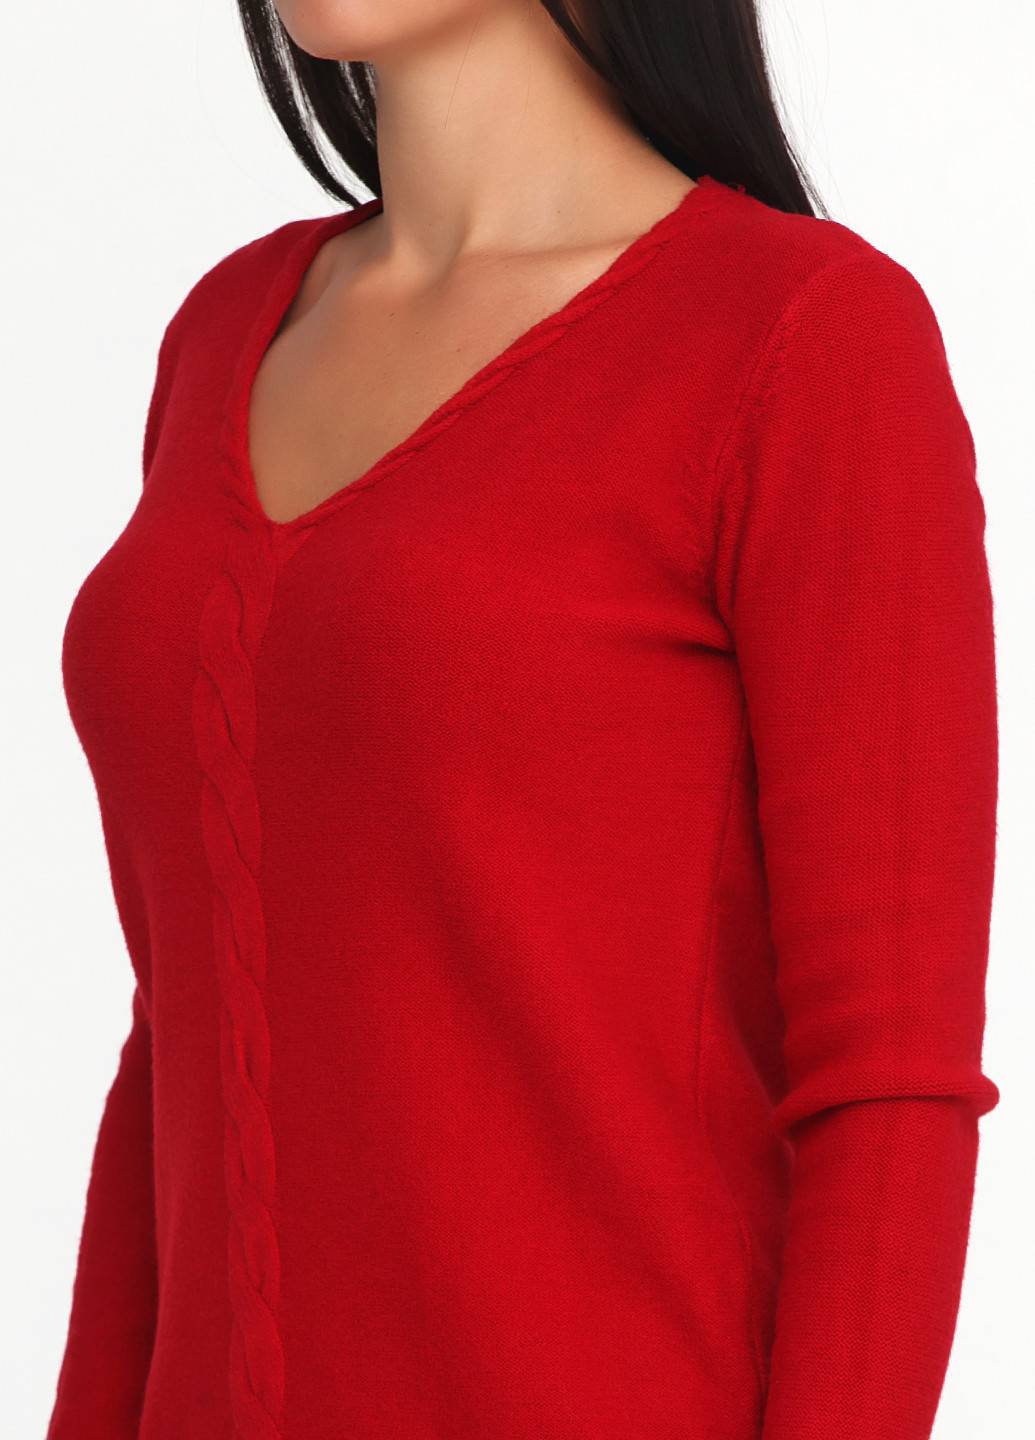 Красный демисезонный пуловер пуловер Cashmere Company